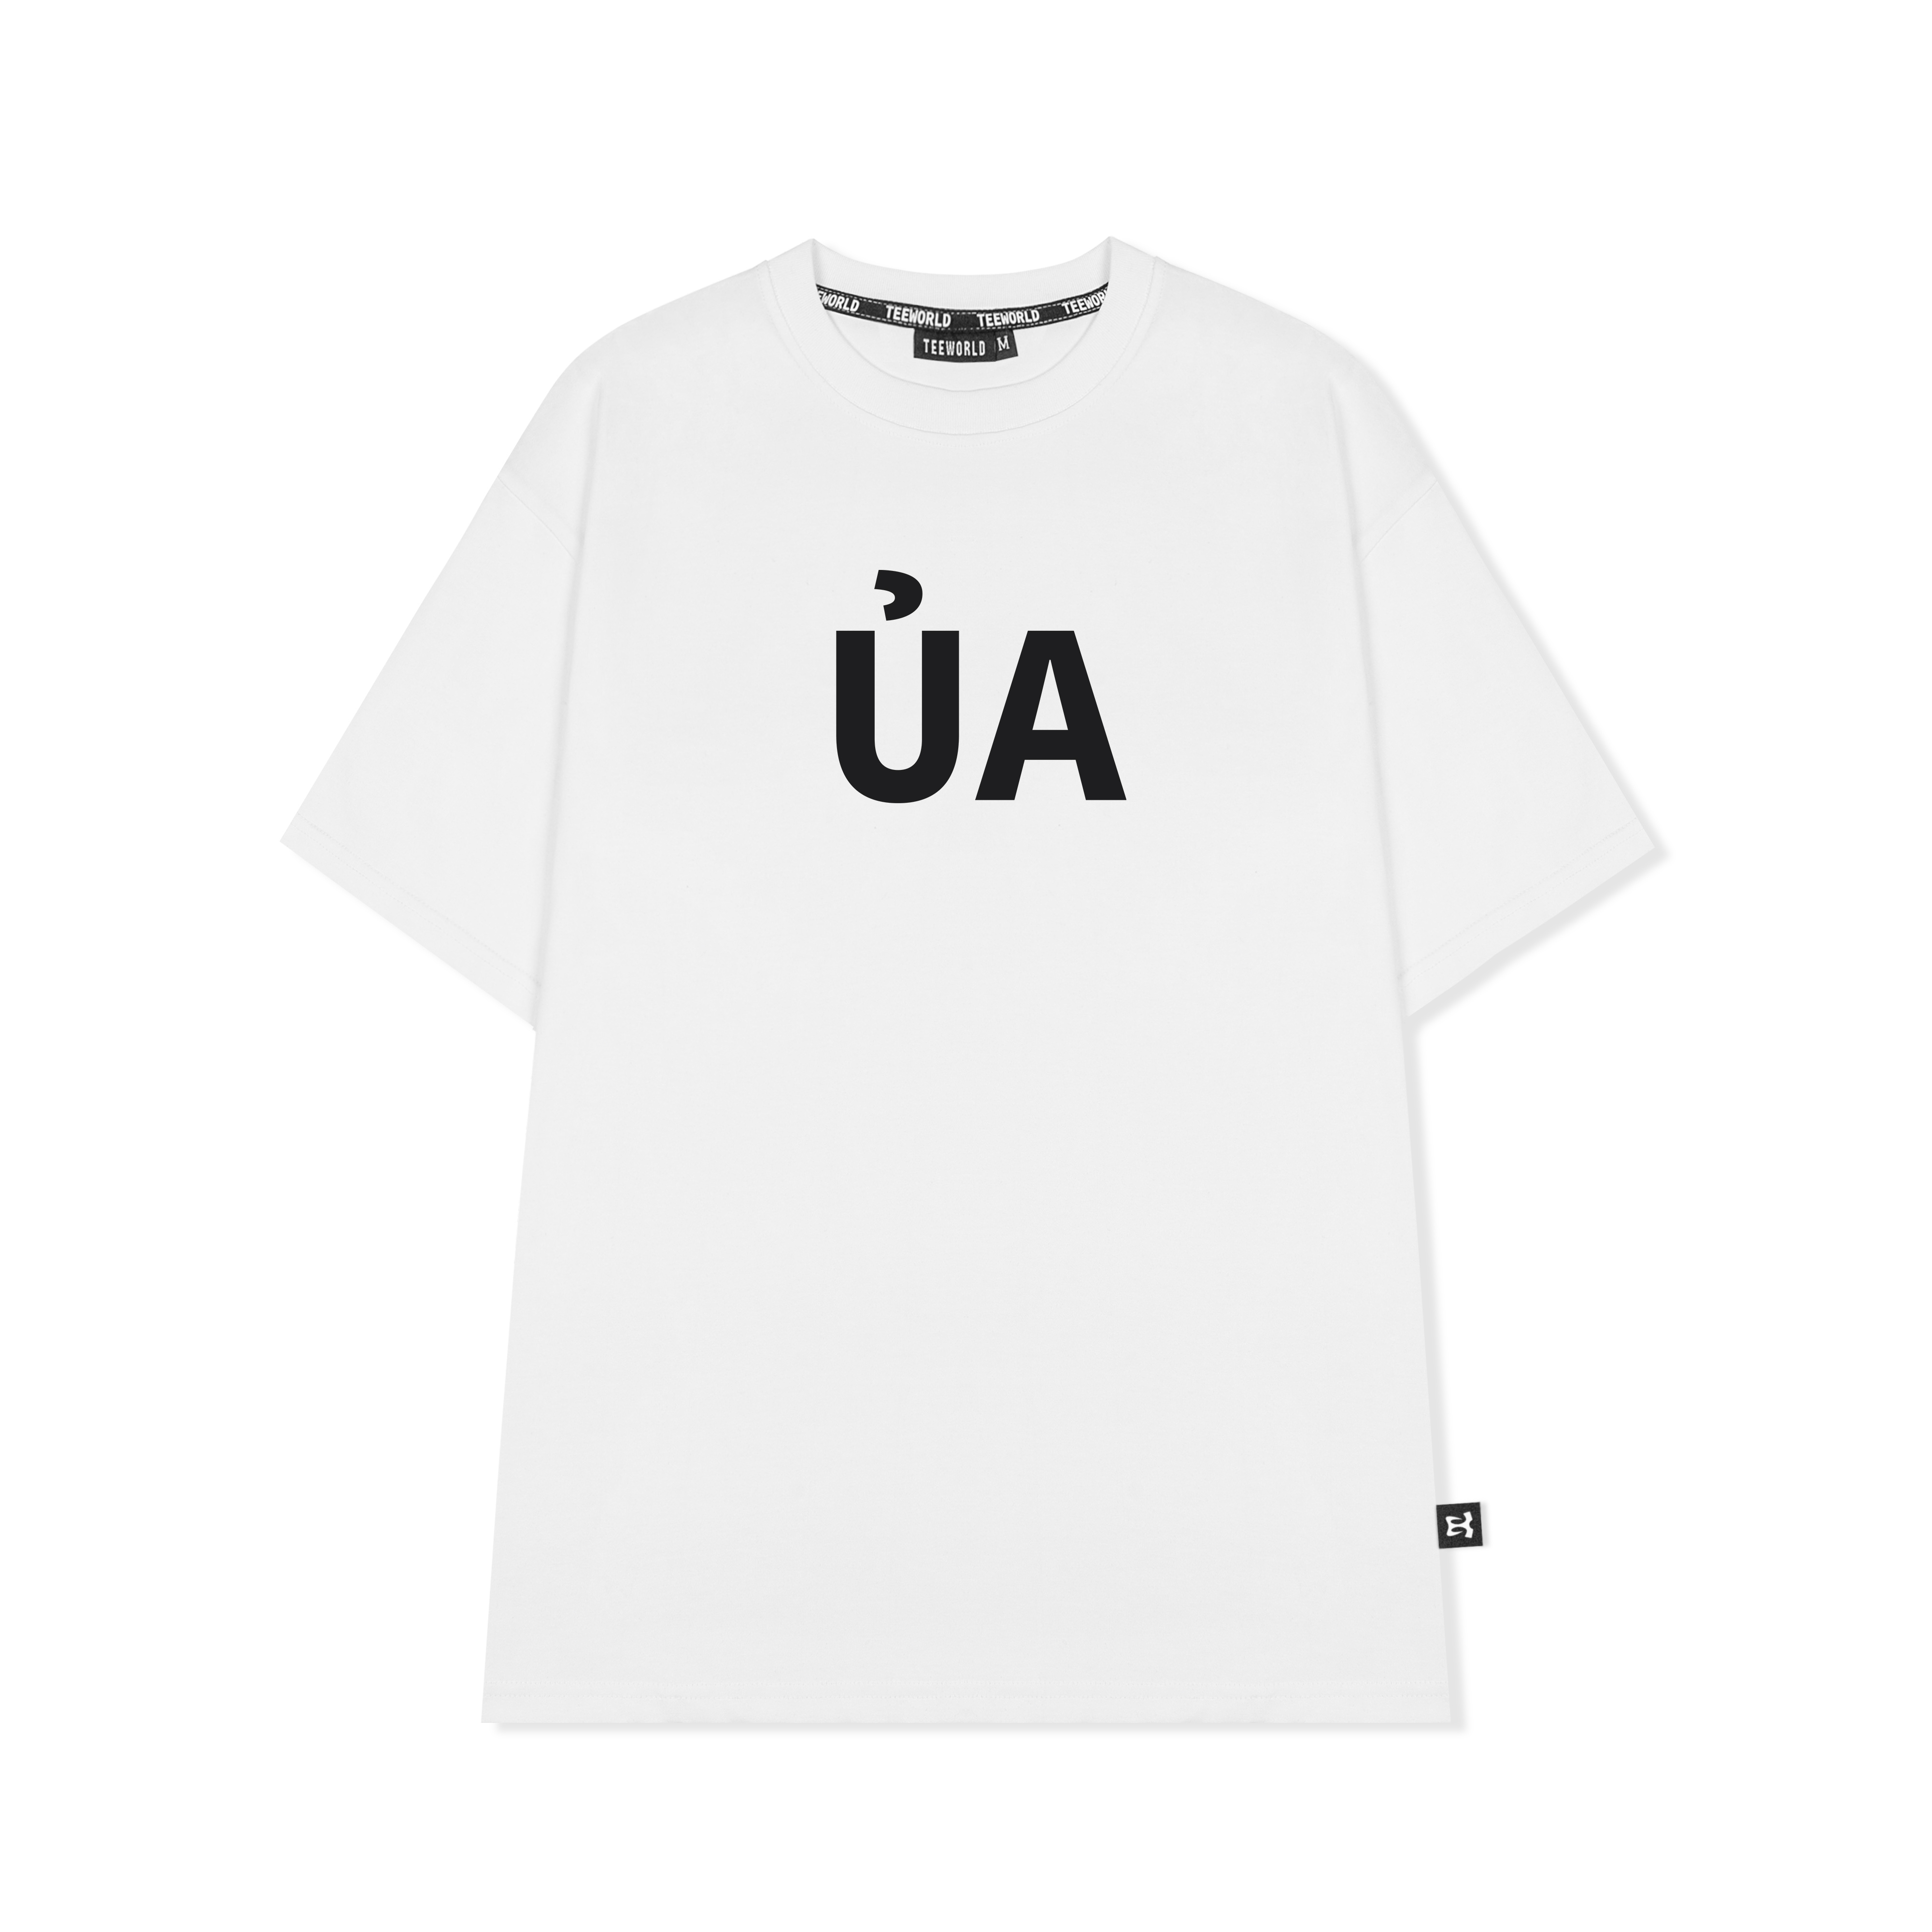 Áo thun Teeworld ỦA Version 2 T-Shirt Nam Nữ Form Rộng Unisex